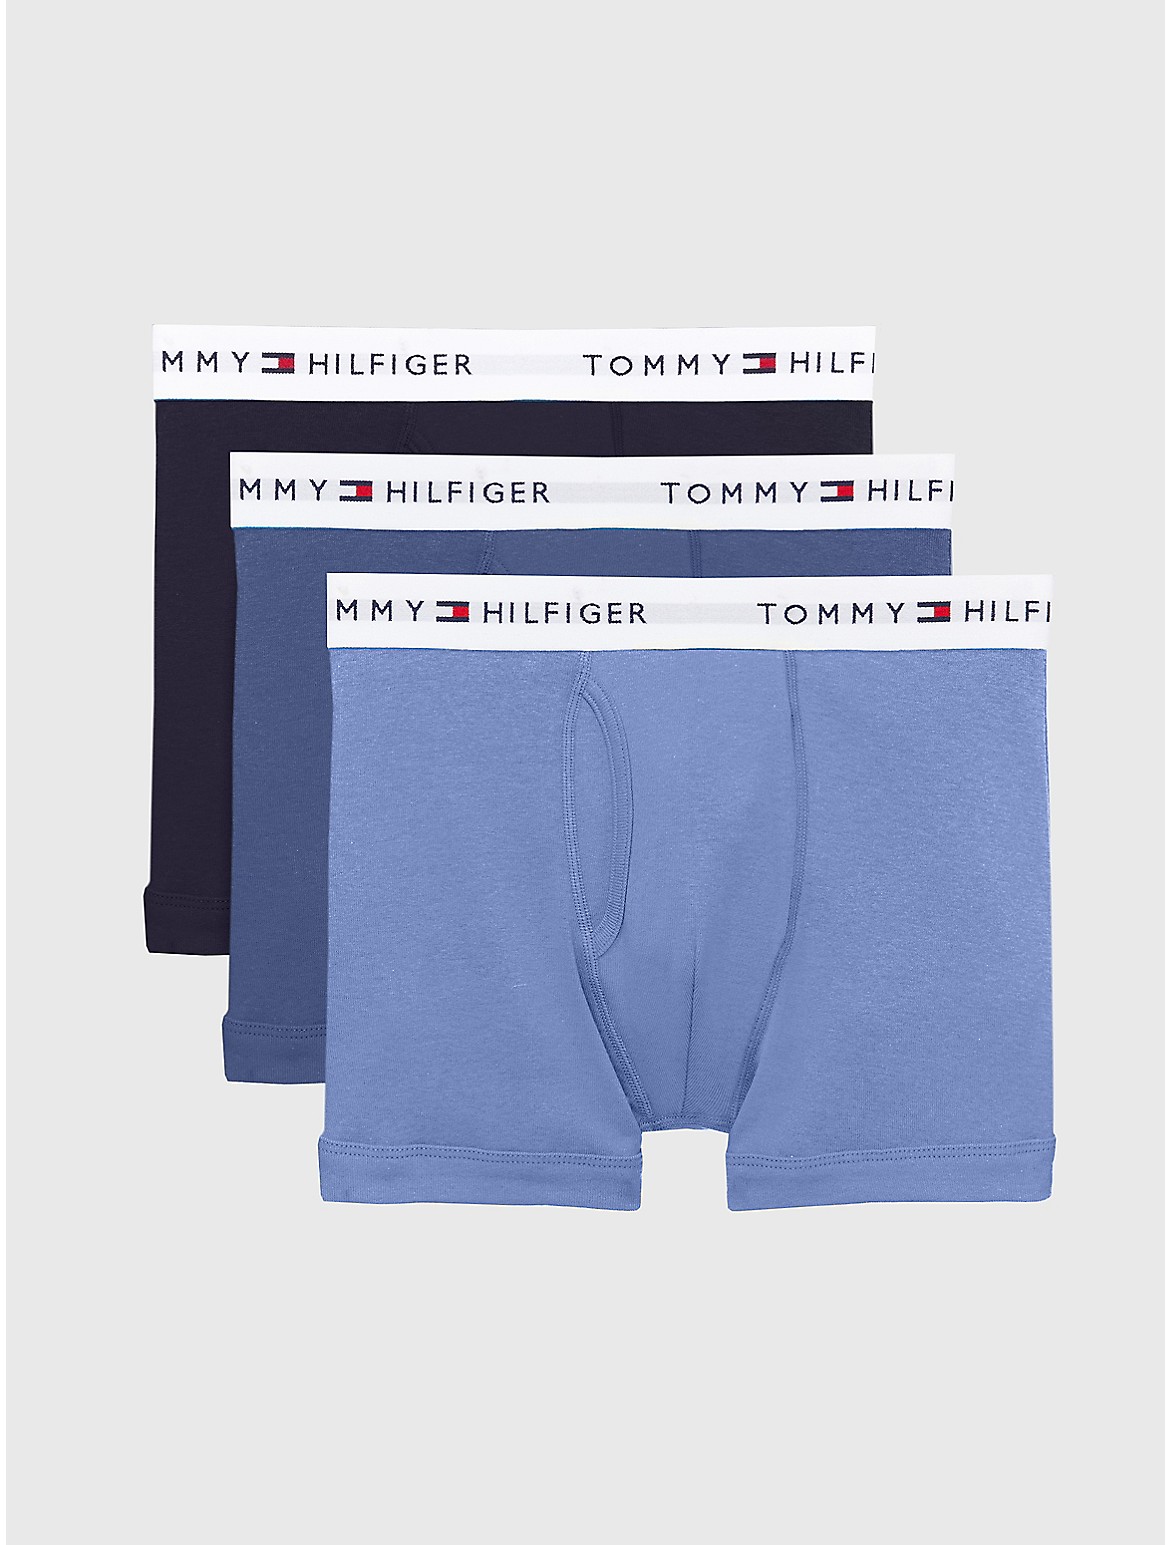 Tommy Hilfiger Men's Cotton Classics Trunk 3-Pack - Light/Pastel Blue - XL